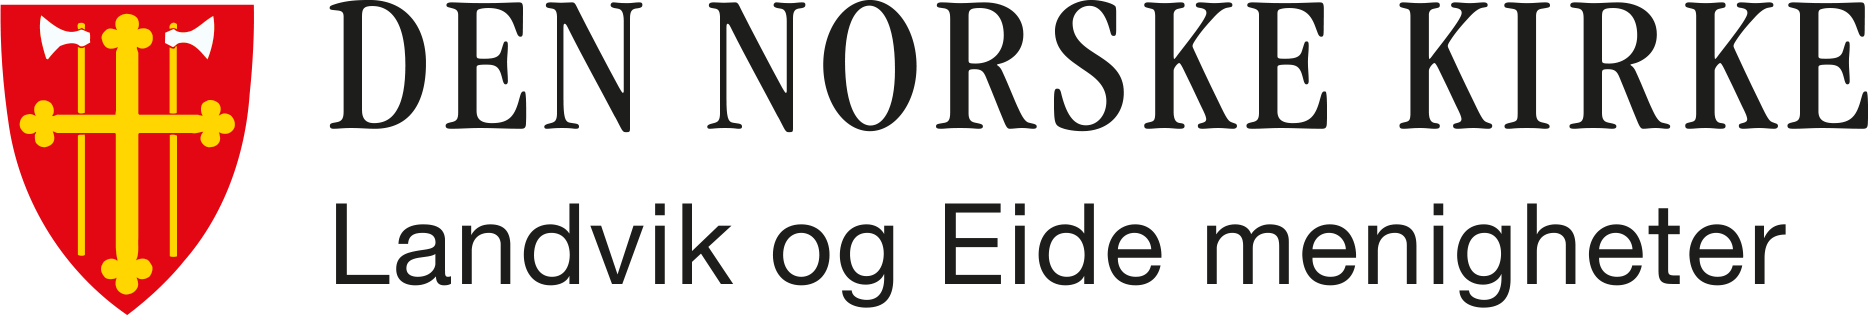 Landvik og Eide menigheter logo